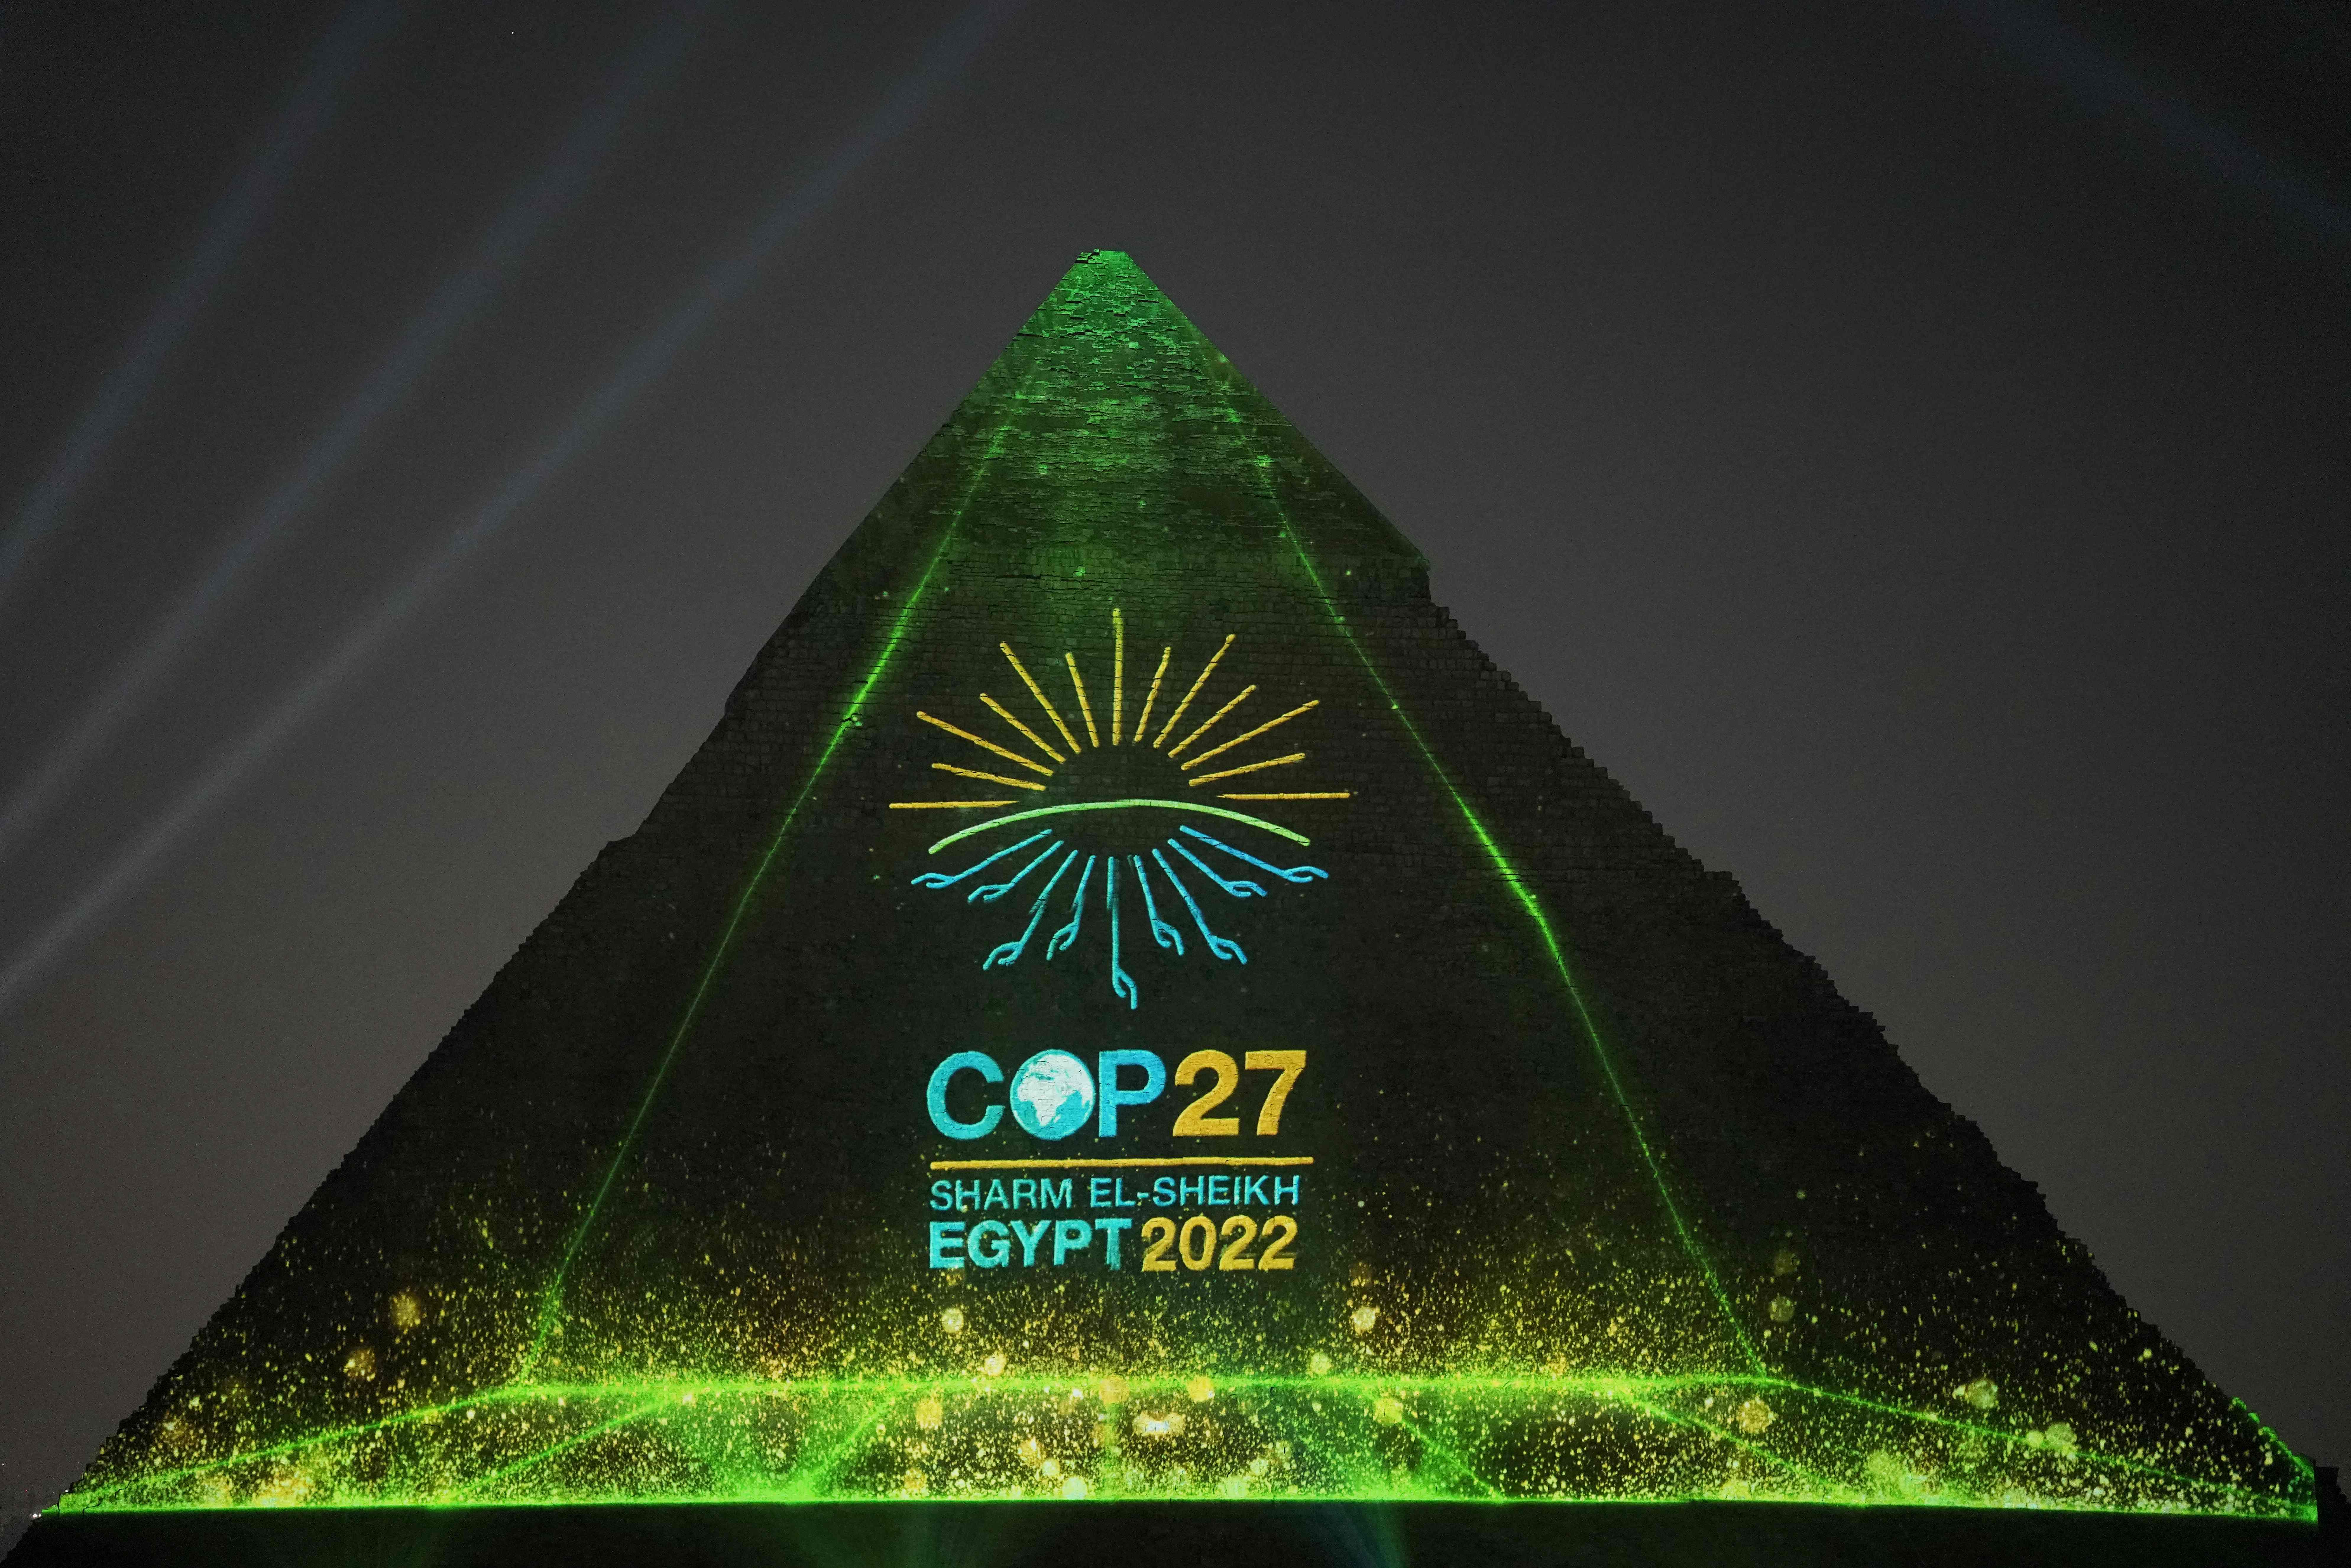 The illumination of Khafre Pyramid, one of the three ancient pyramids of Giza